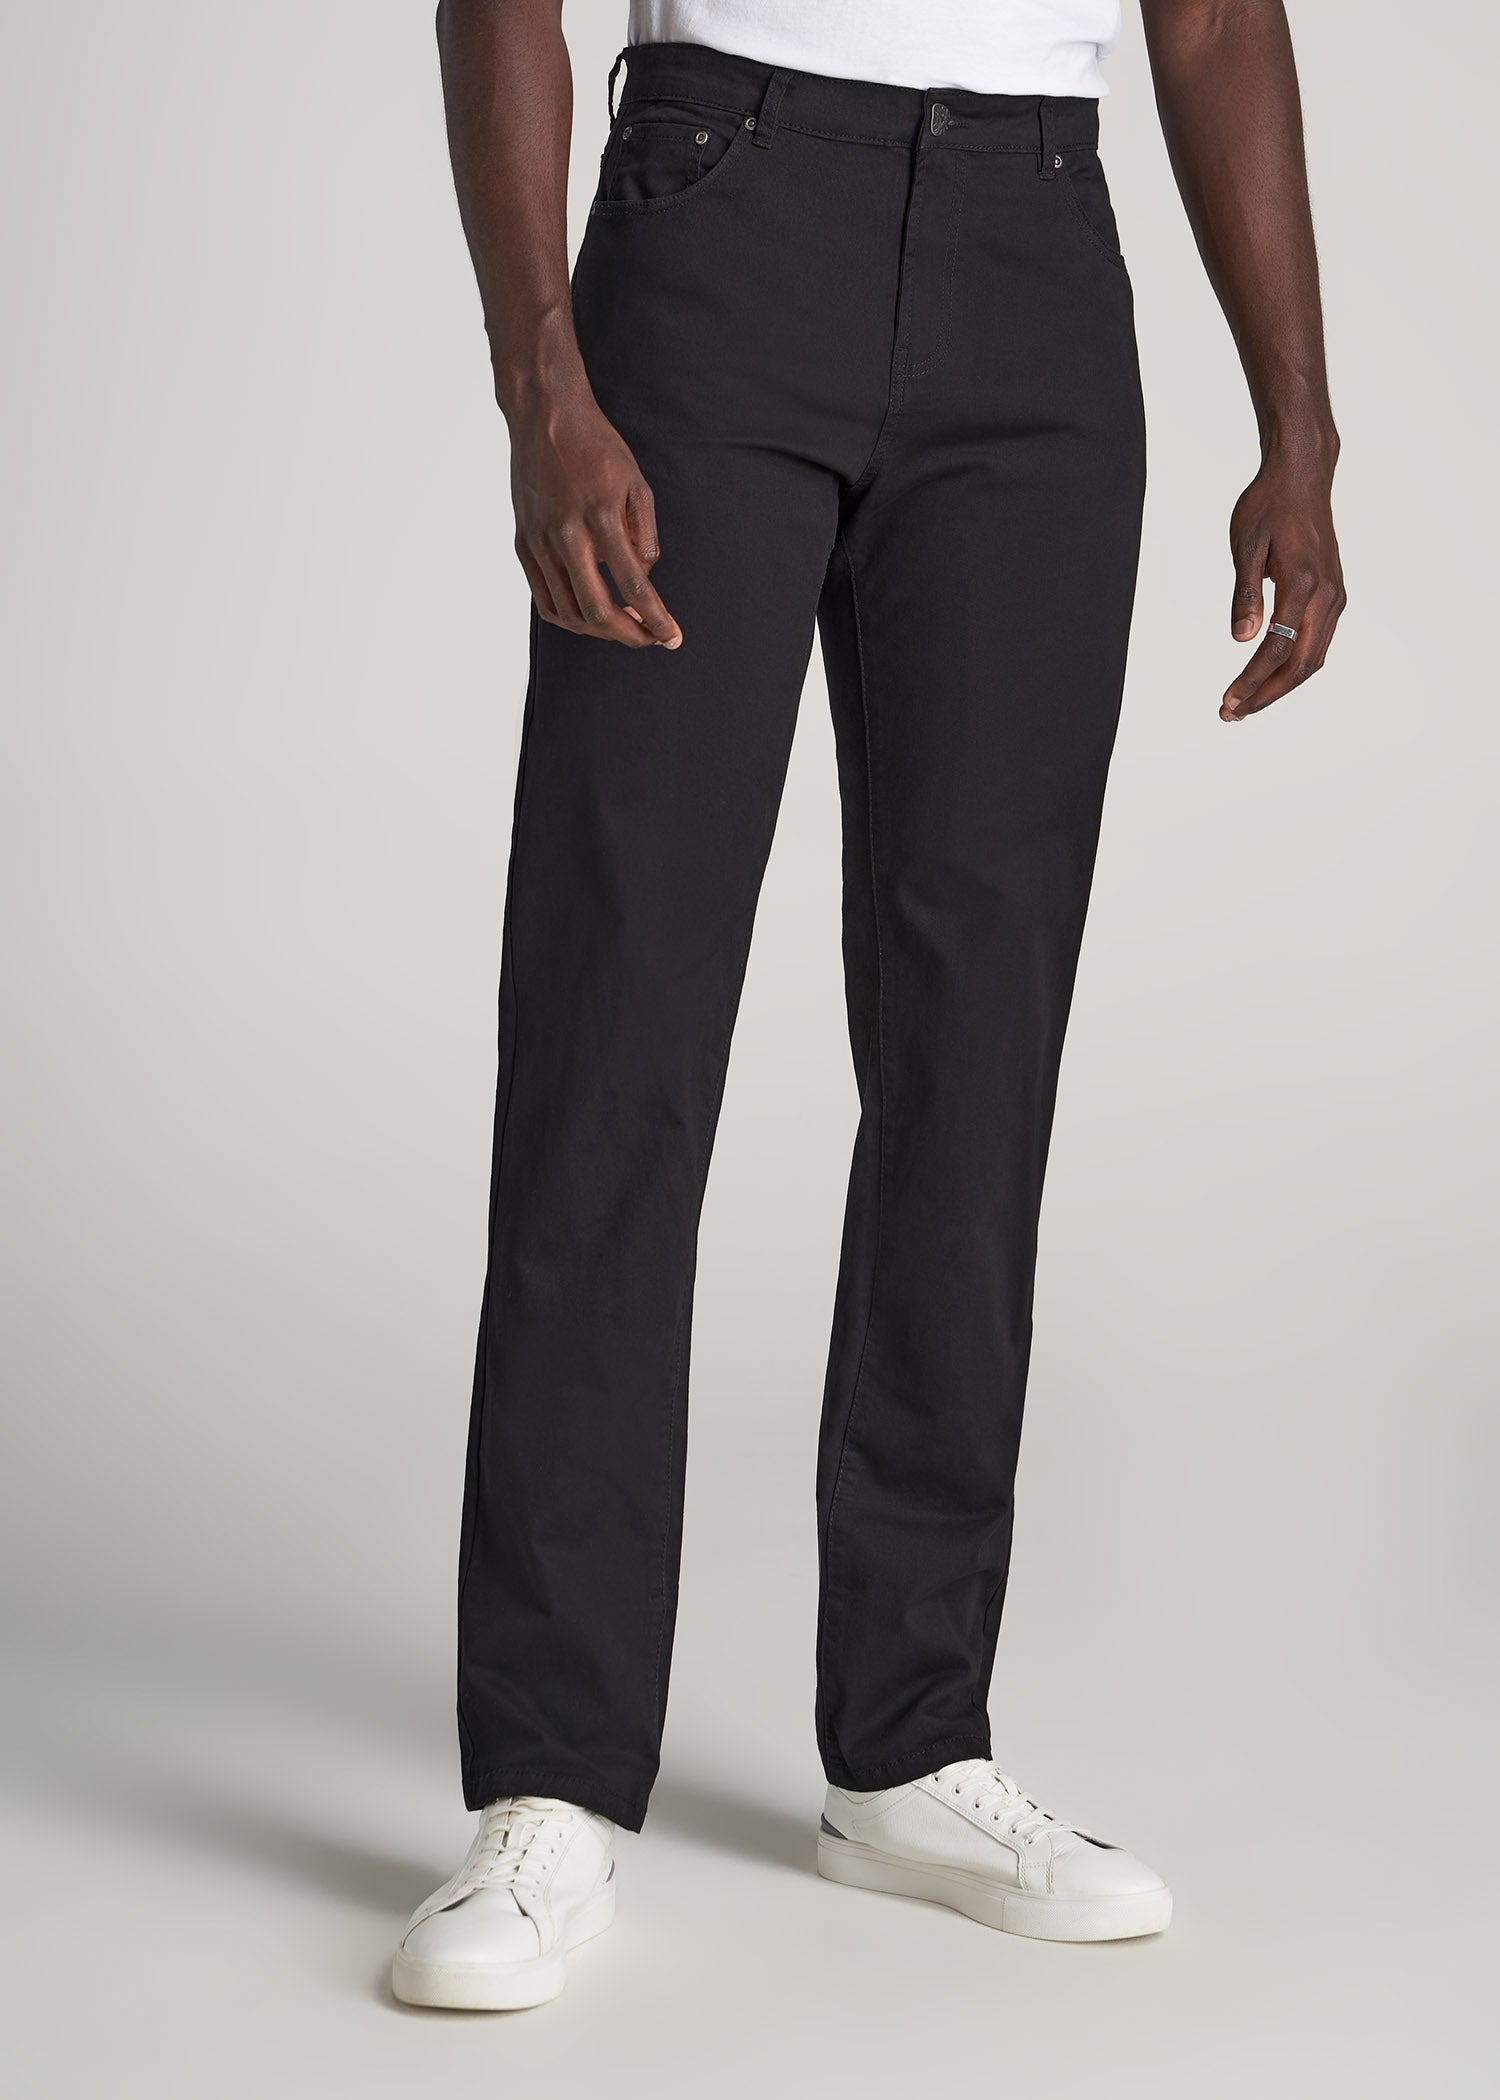 J1 STRAIGHT Leg Five-Pocket Pants for Tall Men in Black